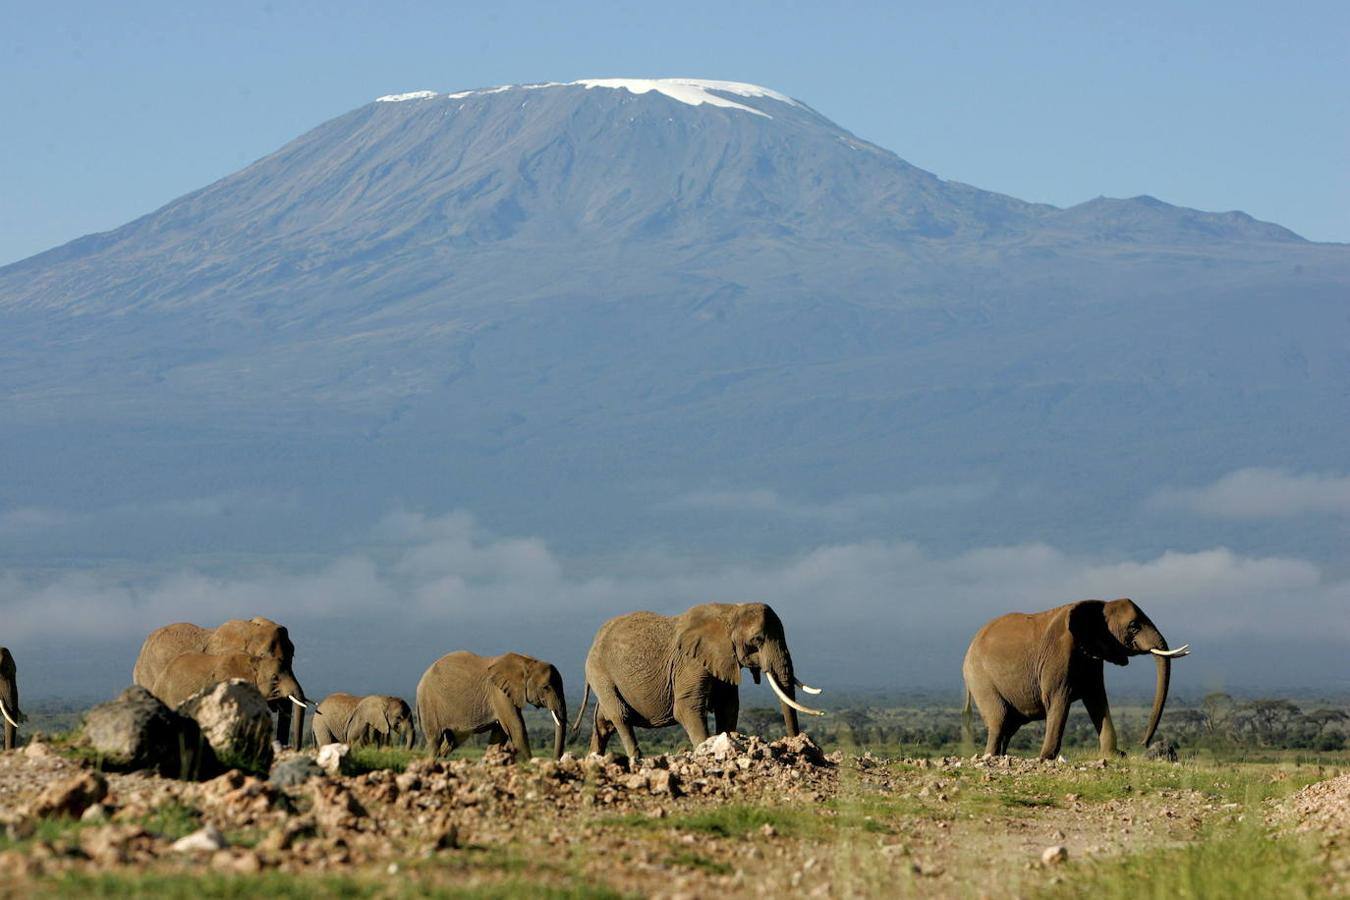 Kilimanjaro: Esta montaña situada al noroeste de Tanzania, se encuentra formada por tres volcanes activos: el Shira, el Mawenzi y el Kibo. La lava expulsada por el cráter de Shira, era poco viscosa por lo que se desplazó lo suficiente para formar la base del macizo con pendientes más suaves, mientras que la alta viscosidad del Mawenzi y el Kibo dieron al conjunto más altura, configurando una montaña con mayores pendientes como el actual Kilimanjaro. 